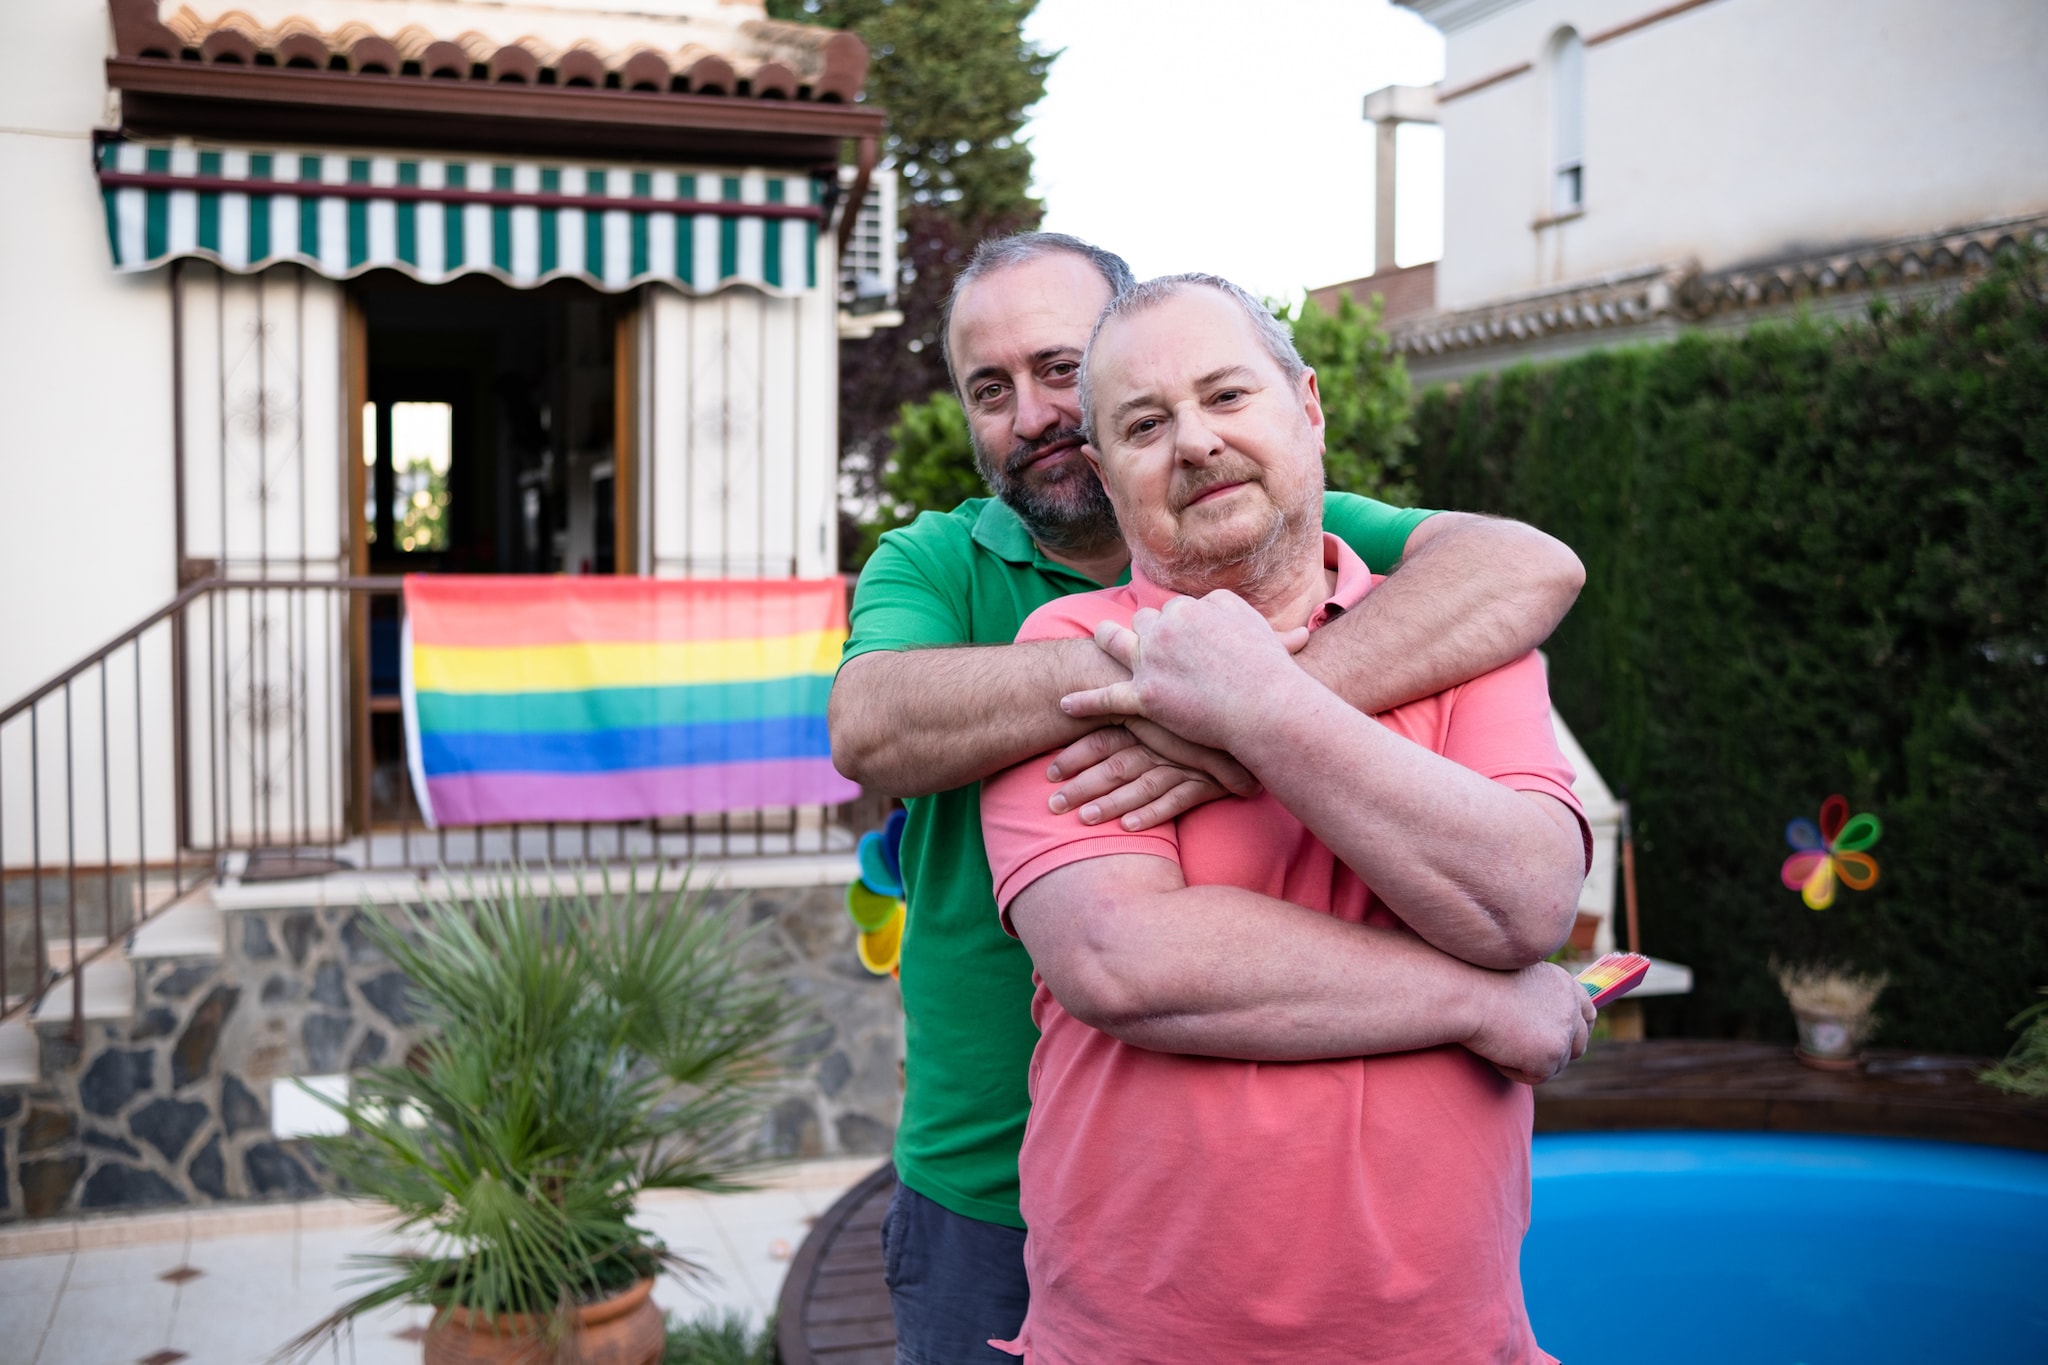 Pareja de la comunidad LGBTQ abrazándose en su patio trasero con una bandera LGBTQ en el fondo.